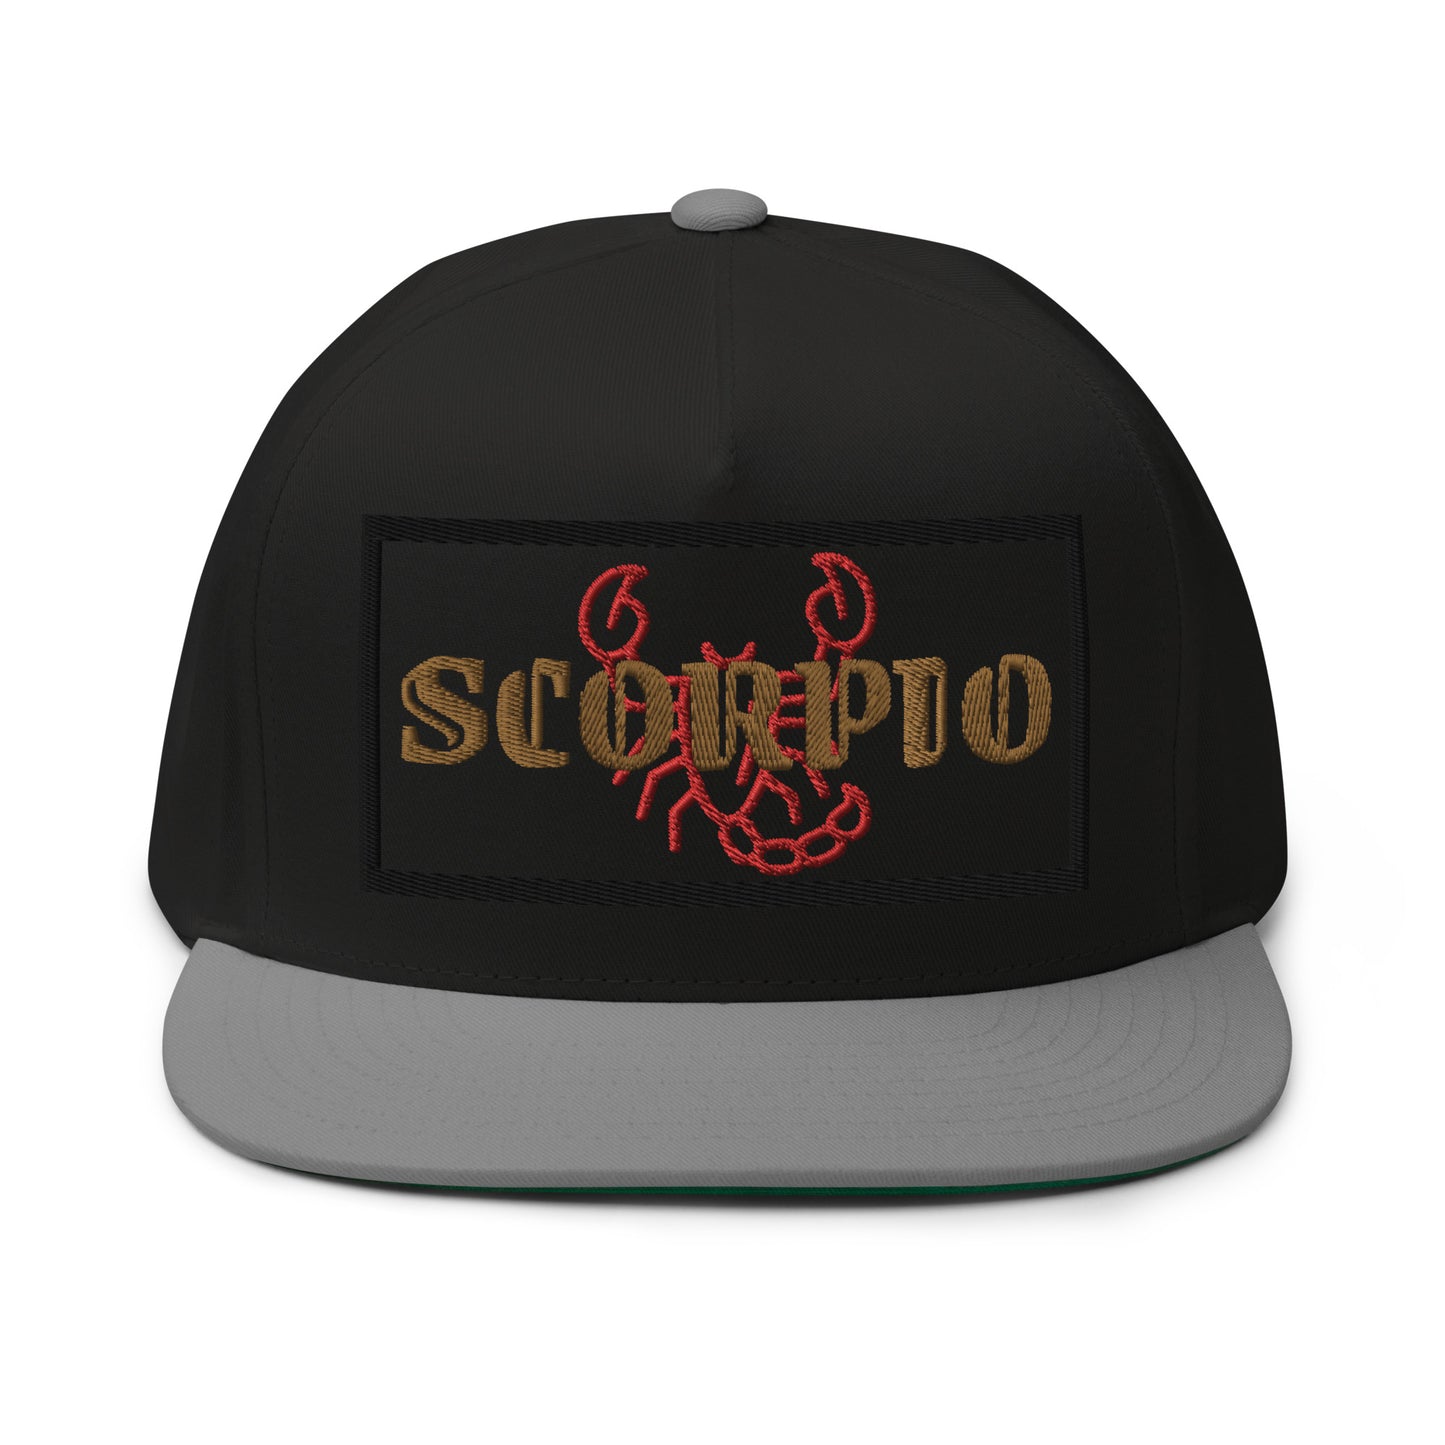 Scorpio Flat Bill Hat